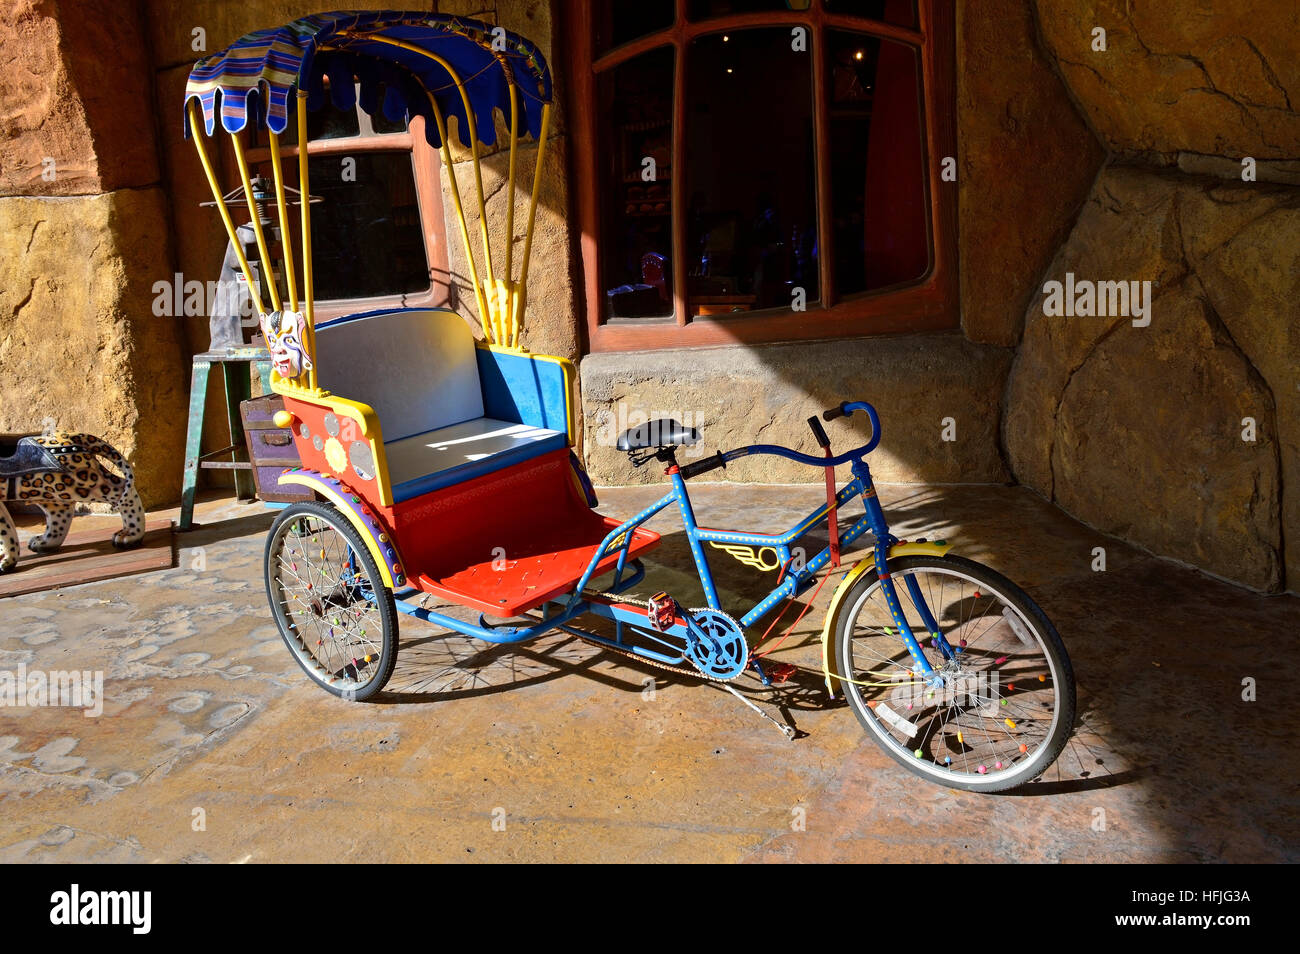 Un vélo à trois roues colorés avec chariot Banque D'Images